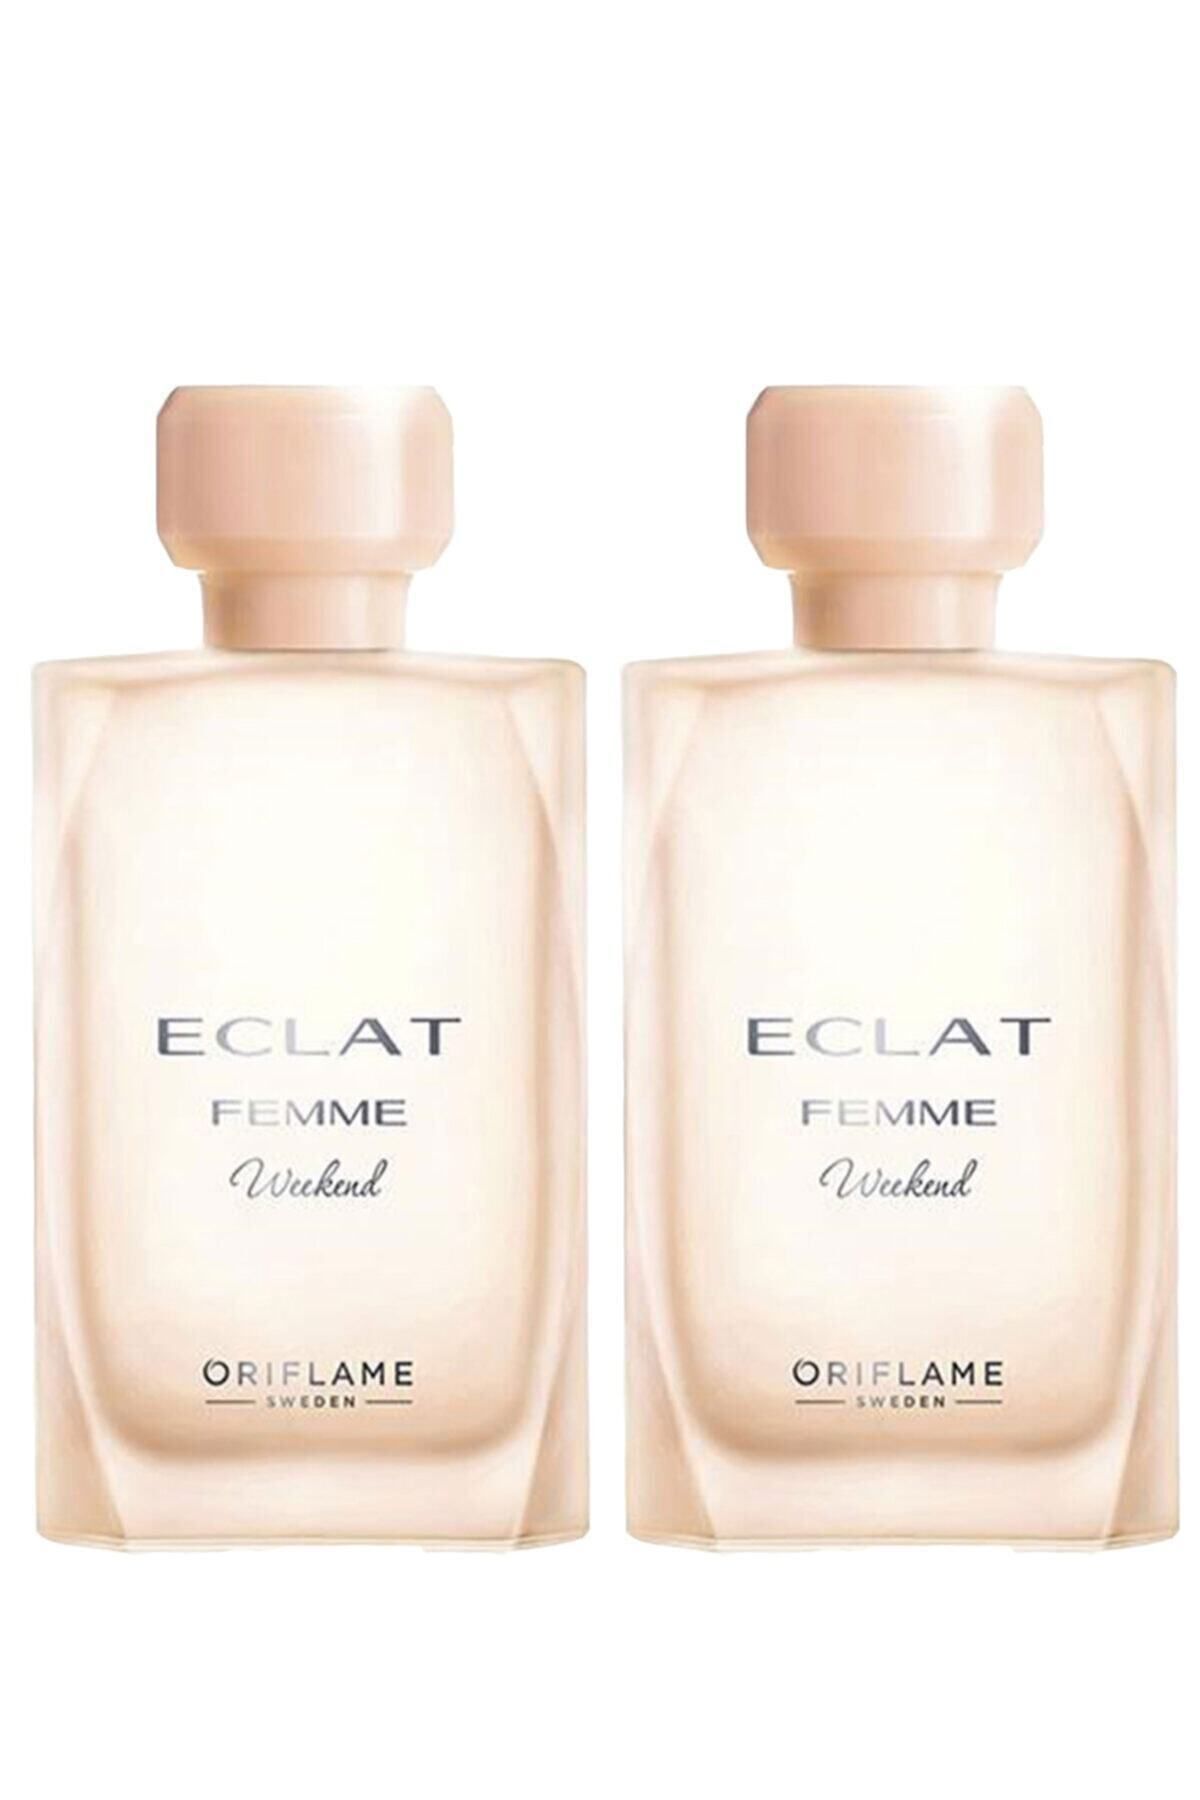 Oriflame Eclat Femme Weekend Edt 50 ml Kadın Parfümü 2 Adet Elitkozmetik-e1